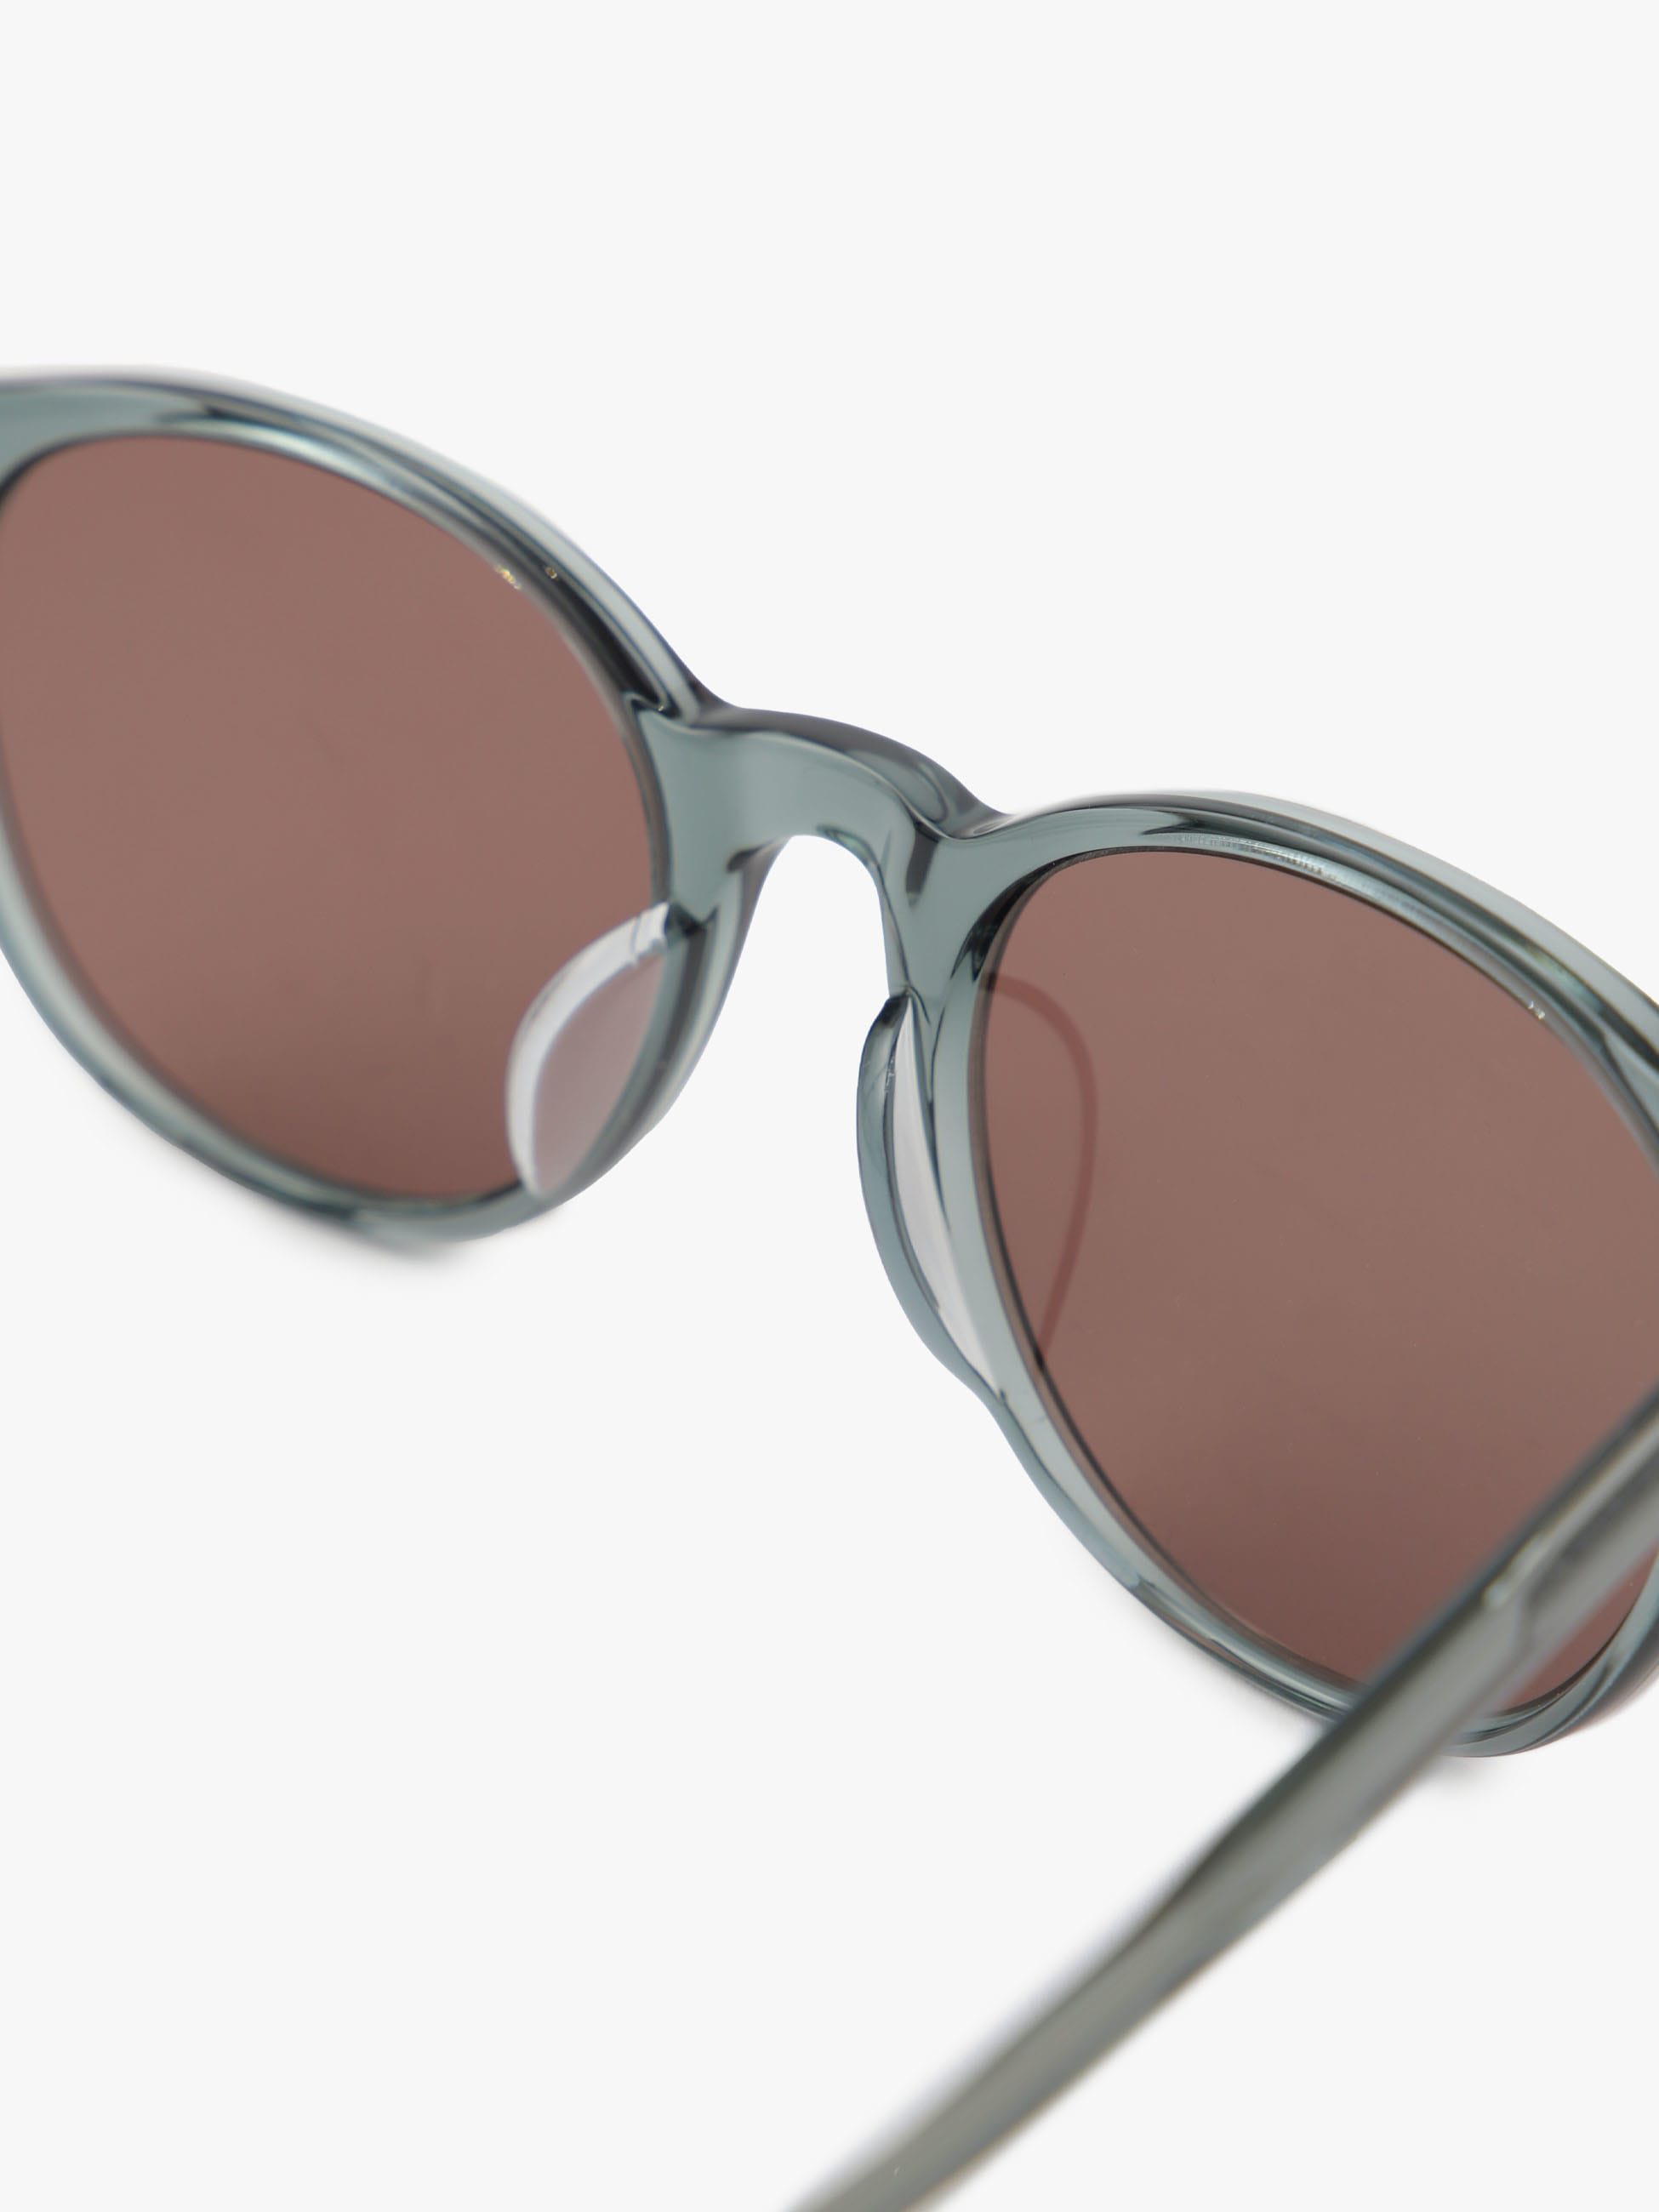 New Boston Sunglasses (Khaki)